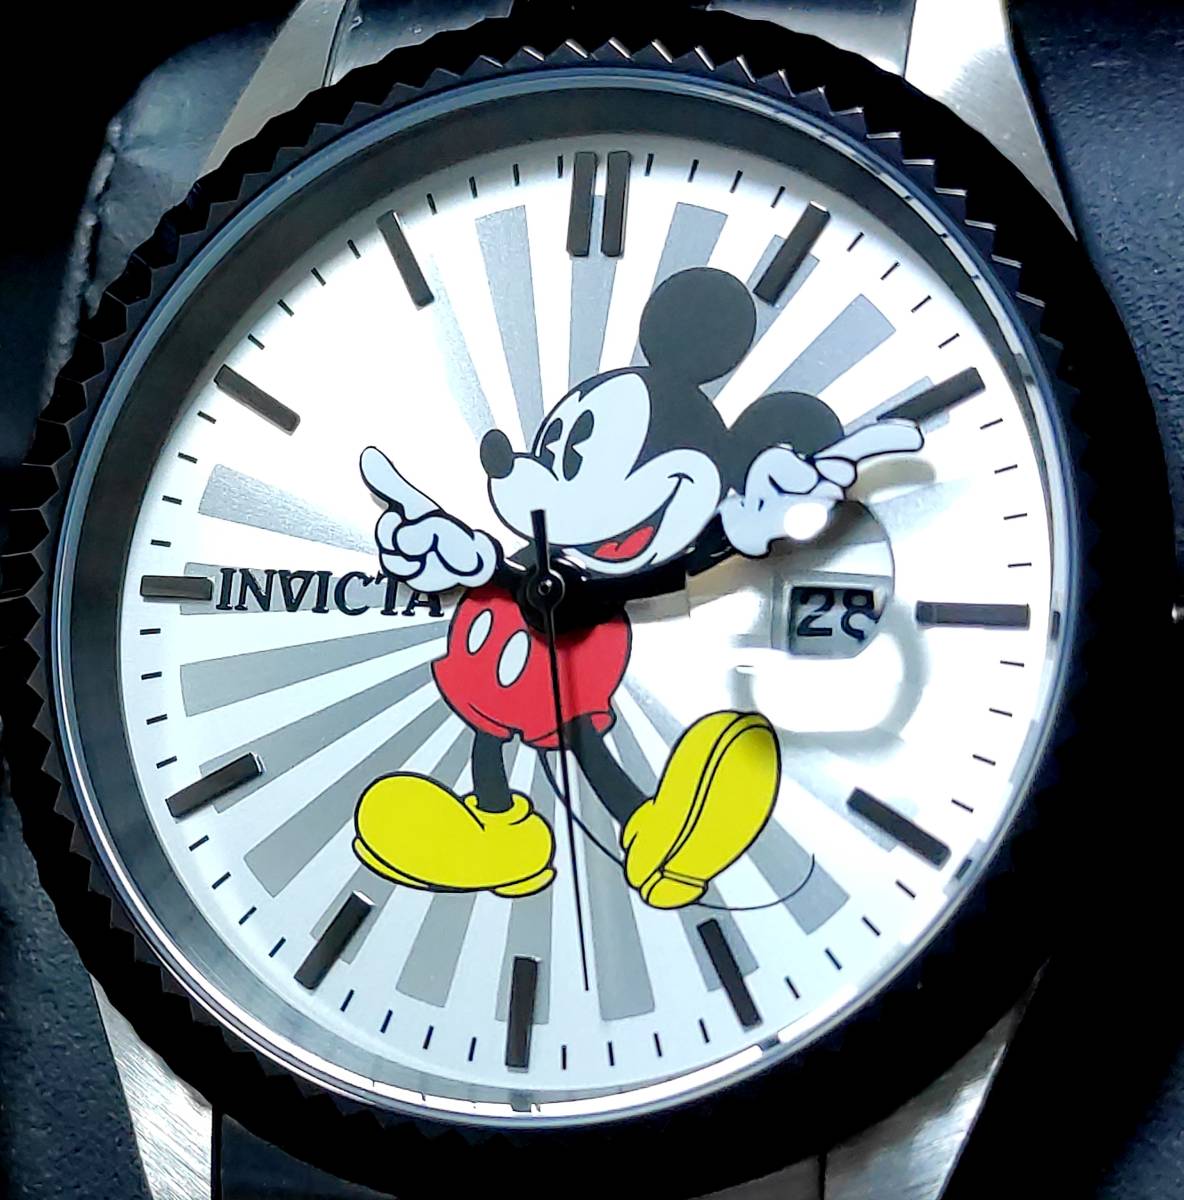 年製 新品 高級腕時計 インビクタ INVICTA 新品5 DISNEY